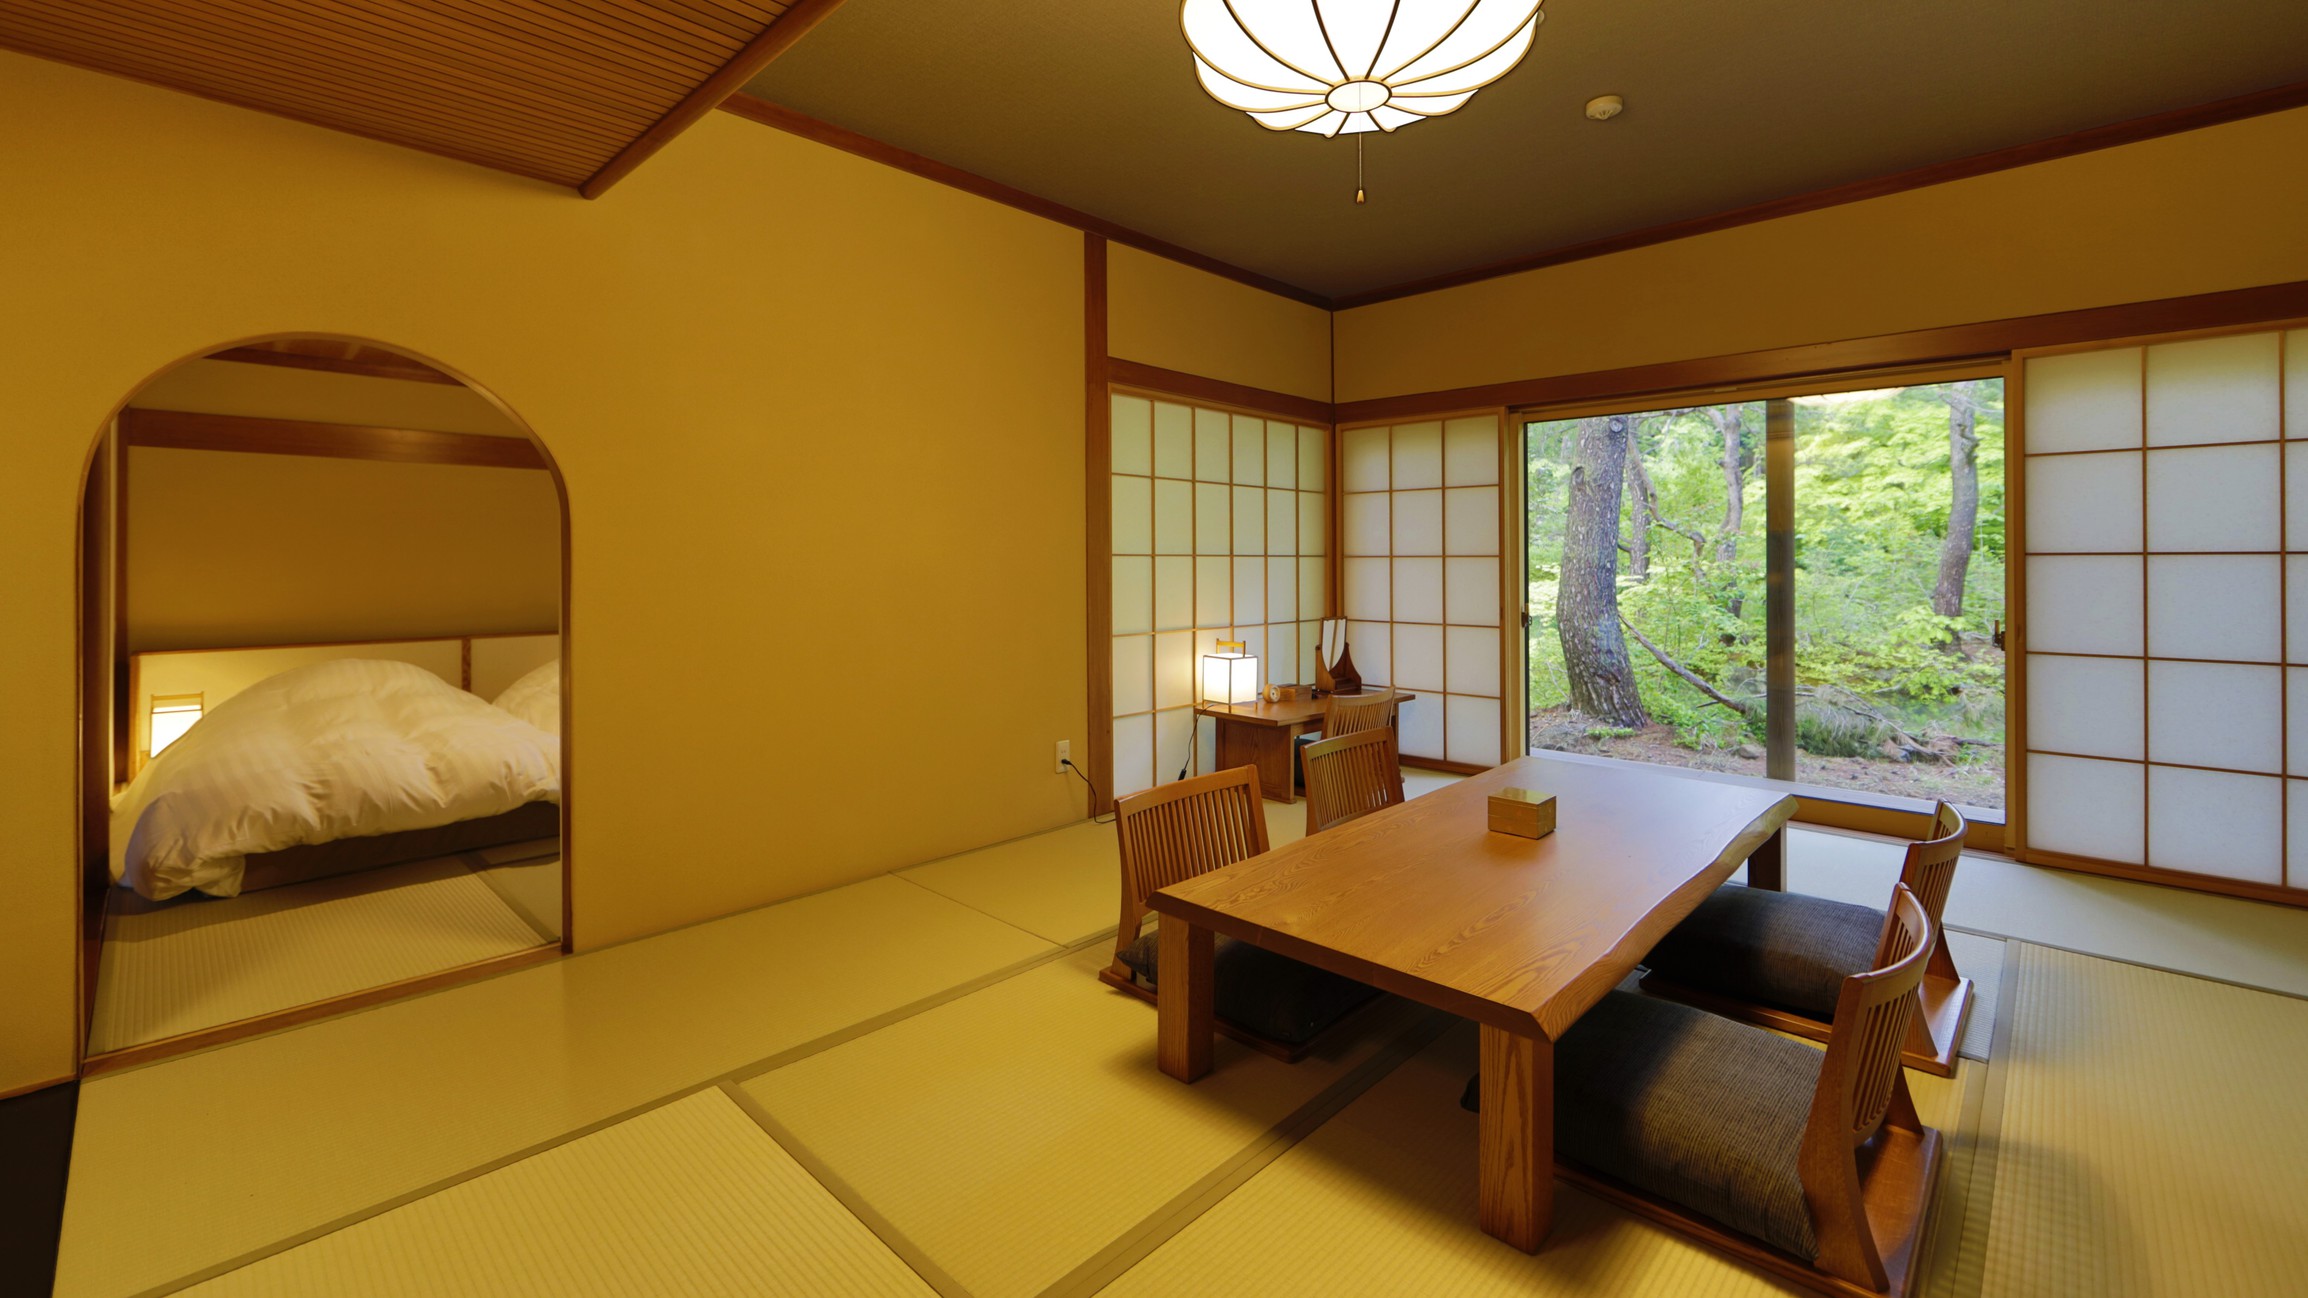 【離れ】天の坐「漣亭」客室一例。古き良き日本の茶室建築に、どこか懐かしさを覚えます。